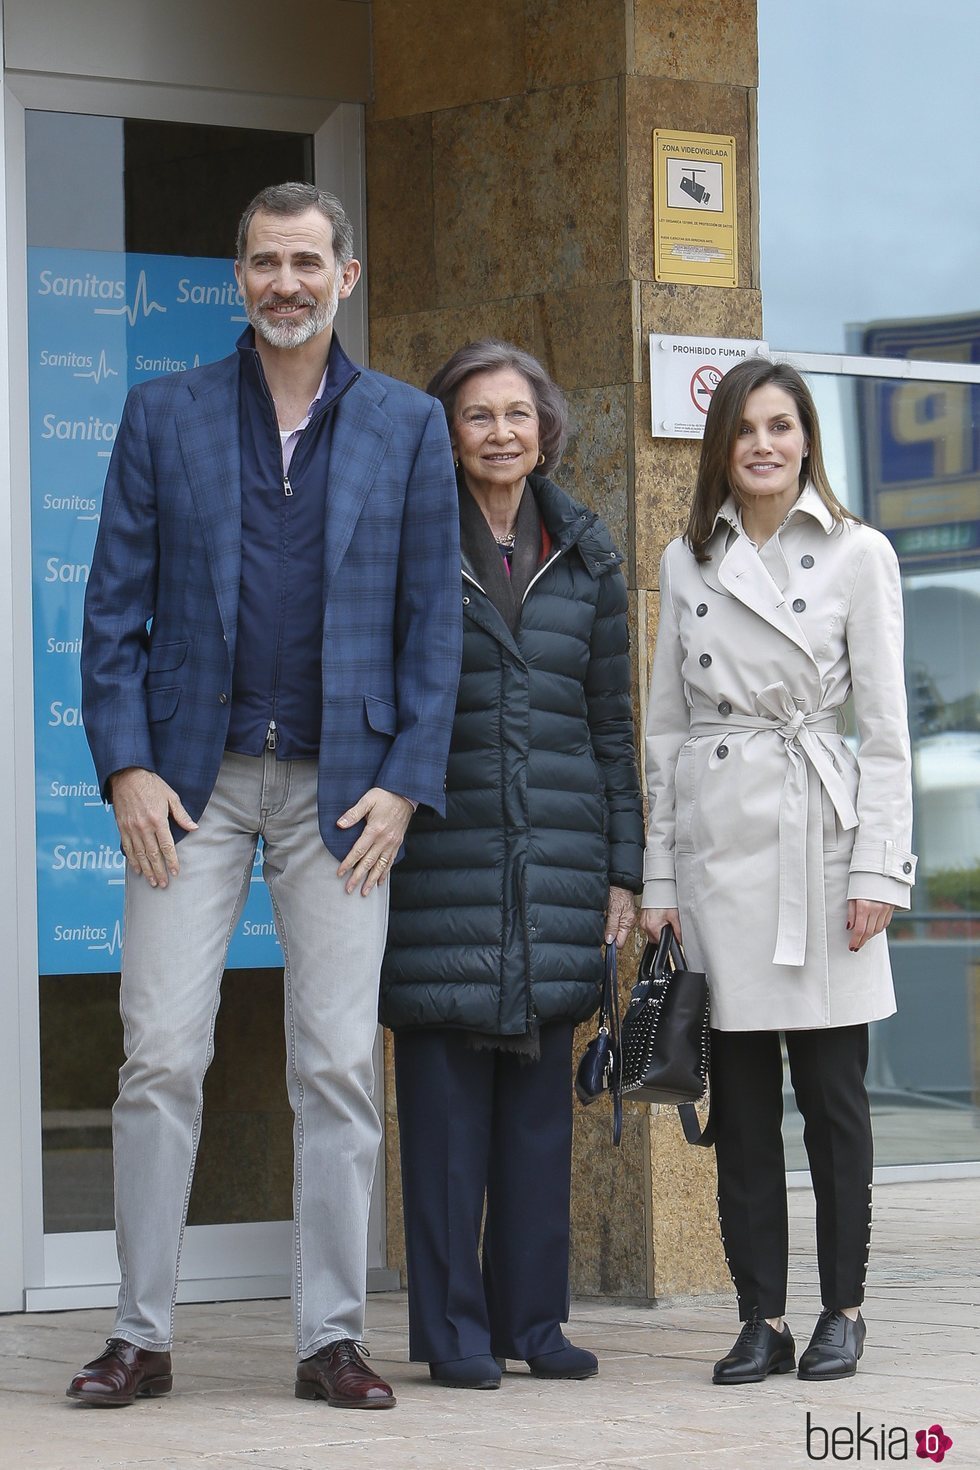 Los Reyes Felipe y Letizia posan con la Reina Sofía en la entrada del hospital